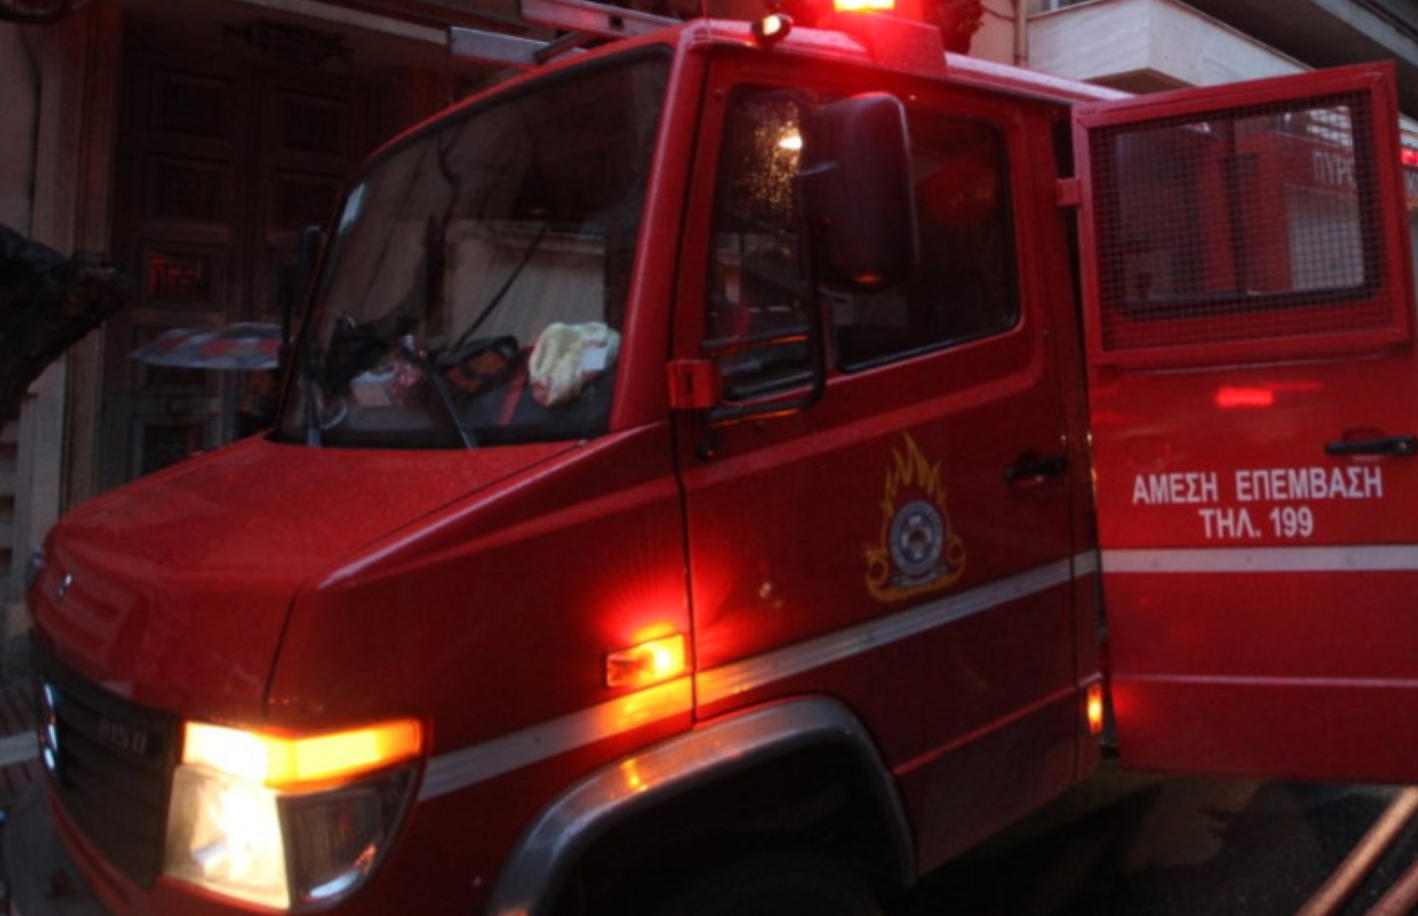 Θεσσαλονίκη: Φωτιά σε λεβητοστάσιο εργοστασίου επεξεργασίας φρούτων